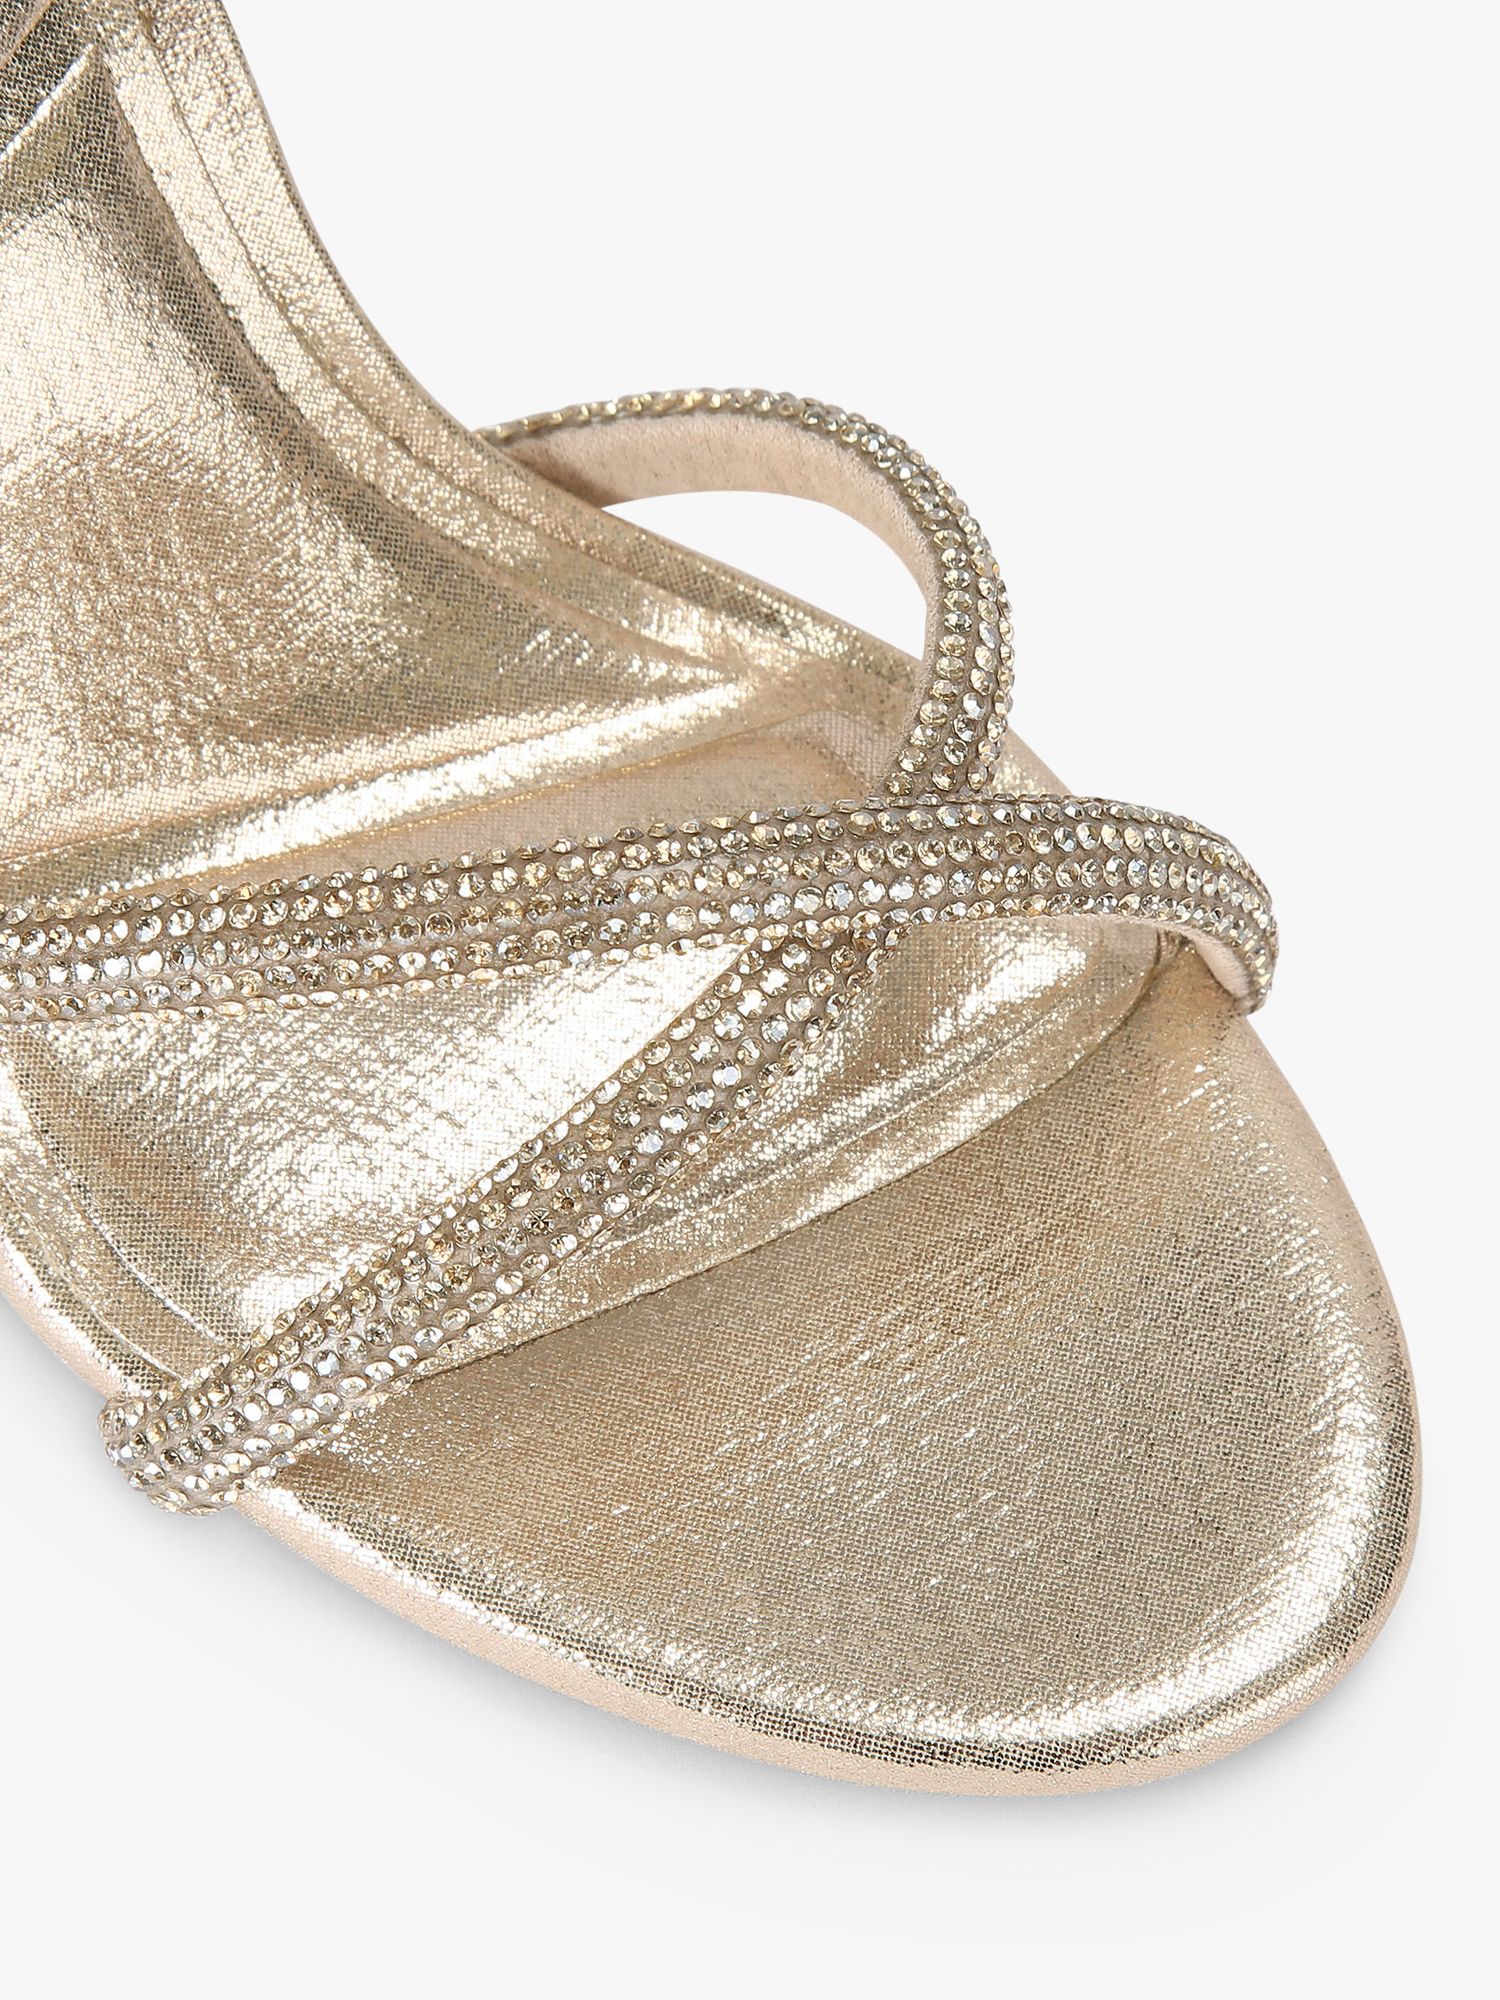 Carvela Stargaze Embellished Stiletto Sandals, Gold at John Lewis ...